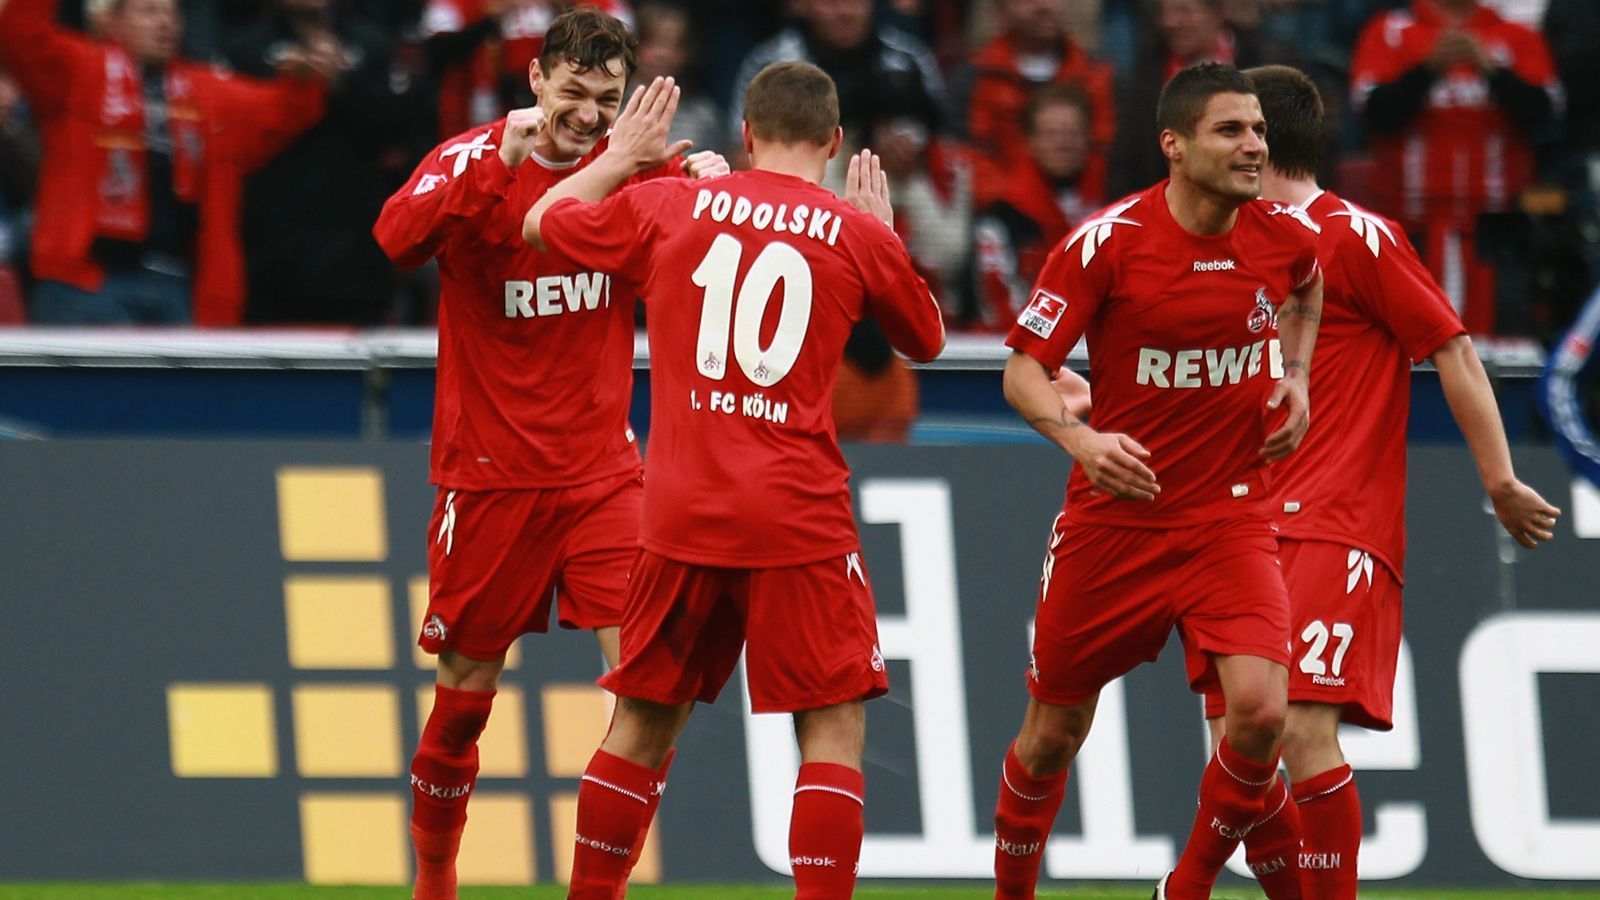 
                <strong>1. FC Köln (2010/11)</strong><br>
                Ebenfalls auf ein sehr erfolgreiches Sturmduo konnte sich Köln in der Saison 2010/11 verlassen. Milivoje Novakovic (li.) und Lukas Podolski (re.) trafen zusammen 30 Mal und konnten damit einen Fehlstart korrigieren. Zu Saisonbeginn lief es noch alles Andere als rund für den FC. Nach nur einem Sieg und zwei Remis aus den ersten neun Spielen fand sich Köln mit fünf Zählern am Tabellenende wieder. Zwar holten Poldi und Co. bis zum Ende der Hinrunde drei weitere Siege, doch der Klub war weiter mittendrin im Abstiegskampf. Erst im Frühjahr 2011 entspannte sich die Lage. Am 21. Spieltag schlug Köln durch einen Novakovic-Doppelpack sogar den FC Bayern mit 3:2 und blieb danach drei weitere Bundesliga-Spiele in Folge ohne Niederlage. Der endgültige Befreiungsschlag gelang dem 1. FC Köln dennoch erst im Saisonendspurt, als man sich von Trainer Zvonimir Soldo trennte. An den letzten drei Spieltag führte Interimslösung Volker Finke den FC zu drei Siegen (2:0 gegen Leverkusen, 2:0 in Frankfurt und 2:1 gegen Schalke). So kletterten die Geißböcke in der Tabelle mit 44 Punkten noch auf Platz 10. 
              